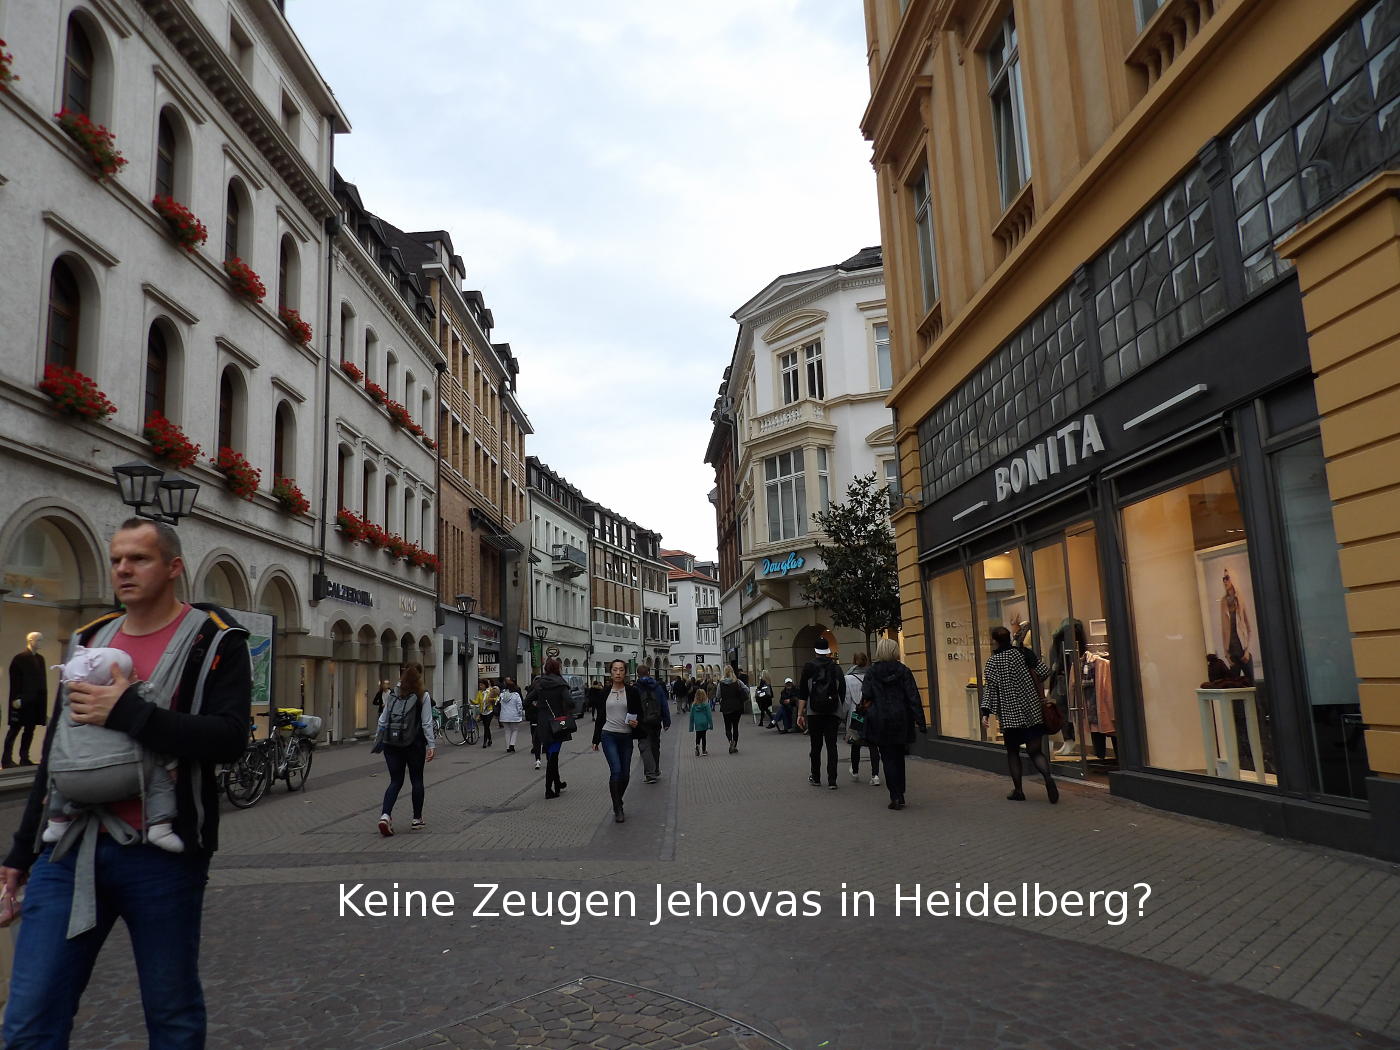 Heidelberg: ein Profibettler und ein Zeuge Jehovas